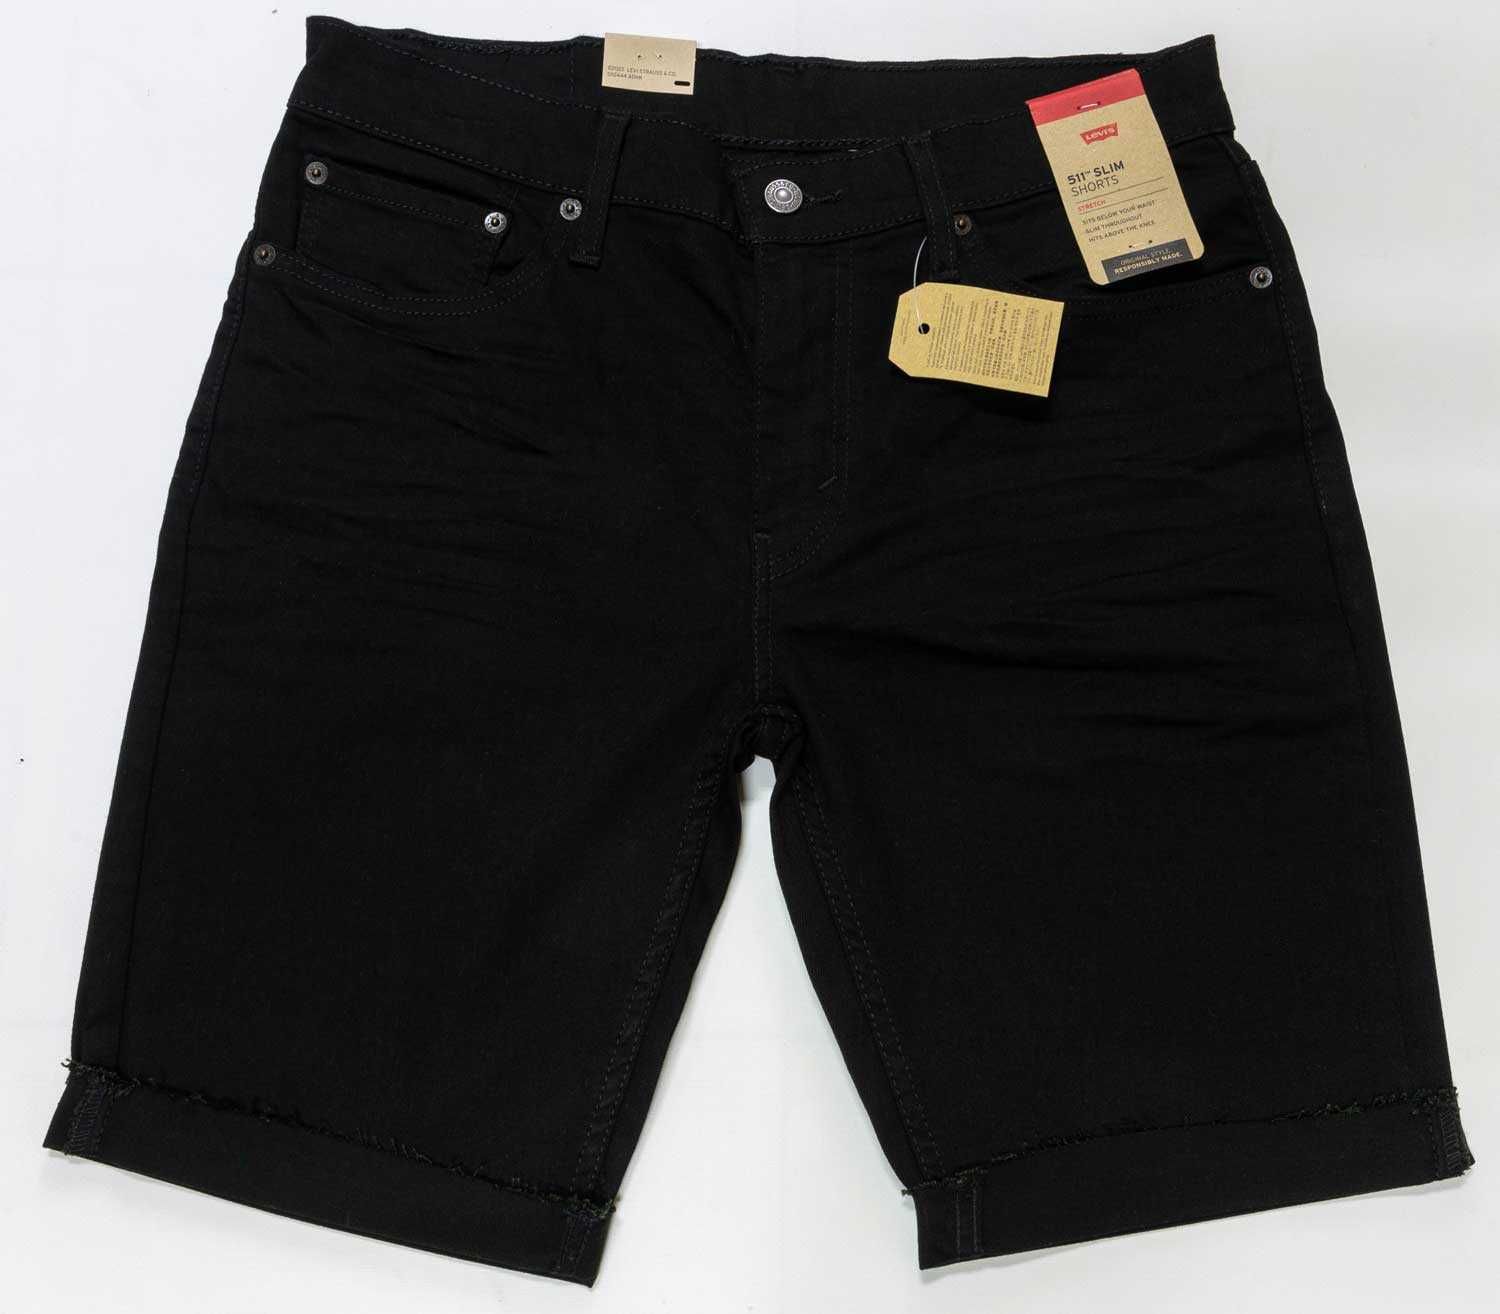 Новые мужские шорты Levis 511 черные, джинсы Левис из США